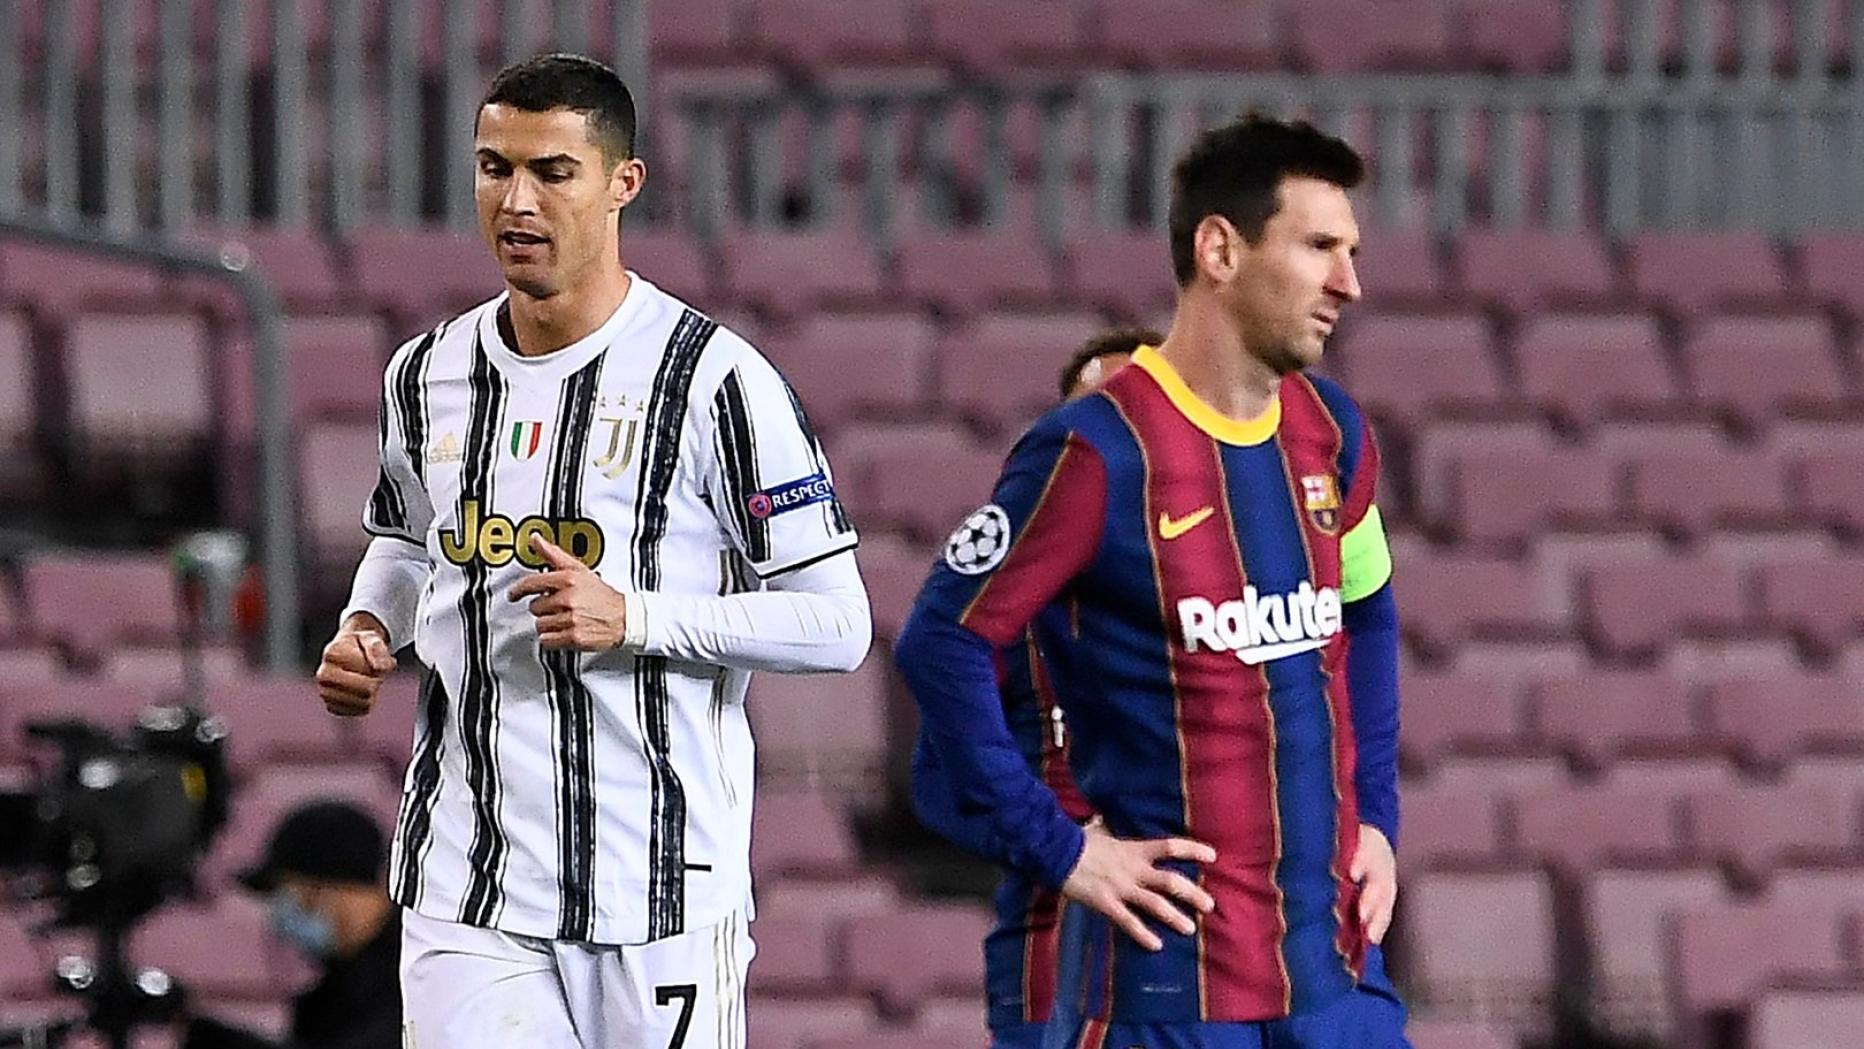 WM 2022 - Lionel Messi und Cristiano Ronaldo duellieren sich für  Werbekampagne am Schachbrett - Eurosport